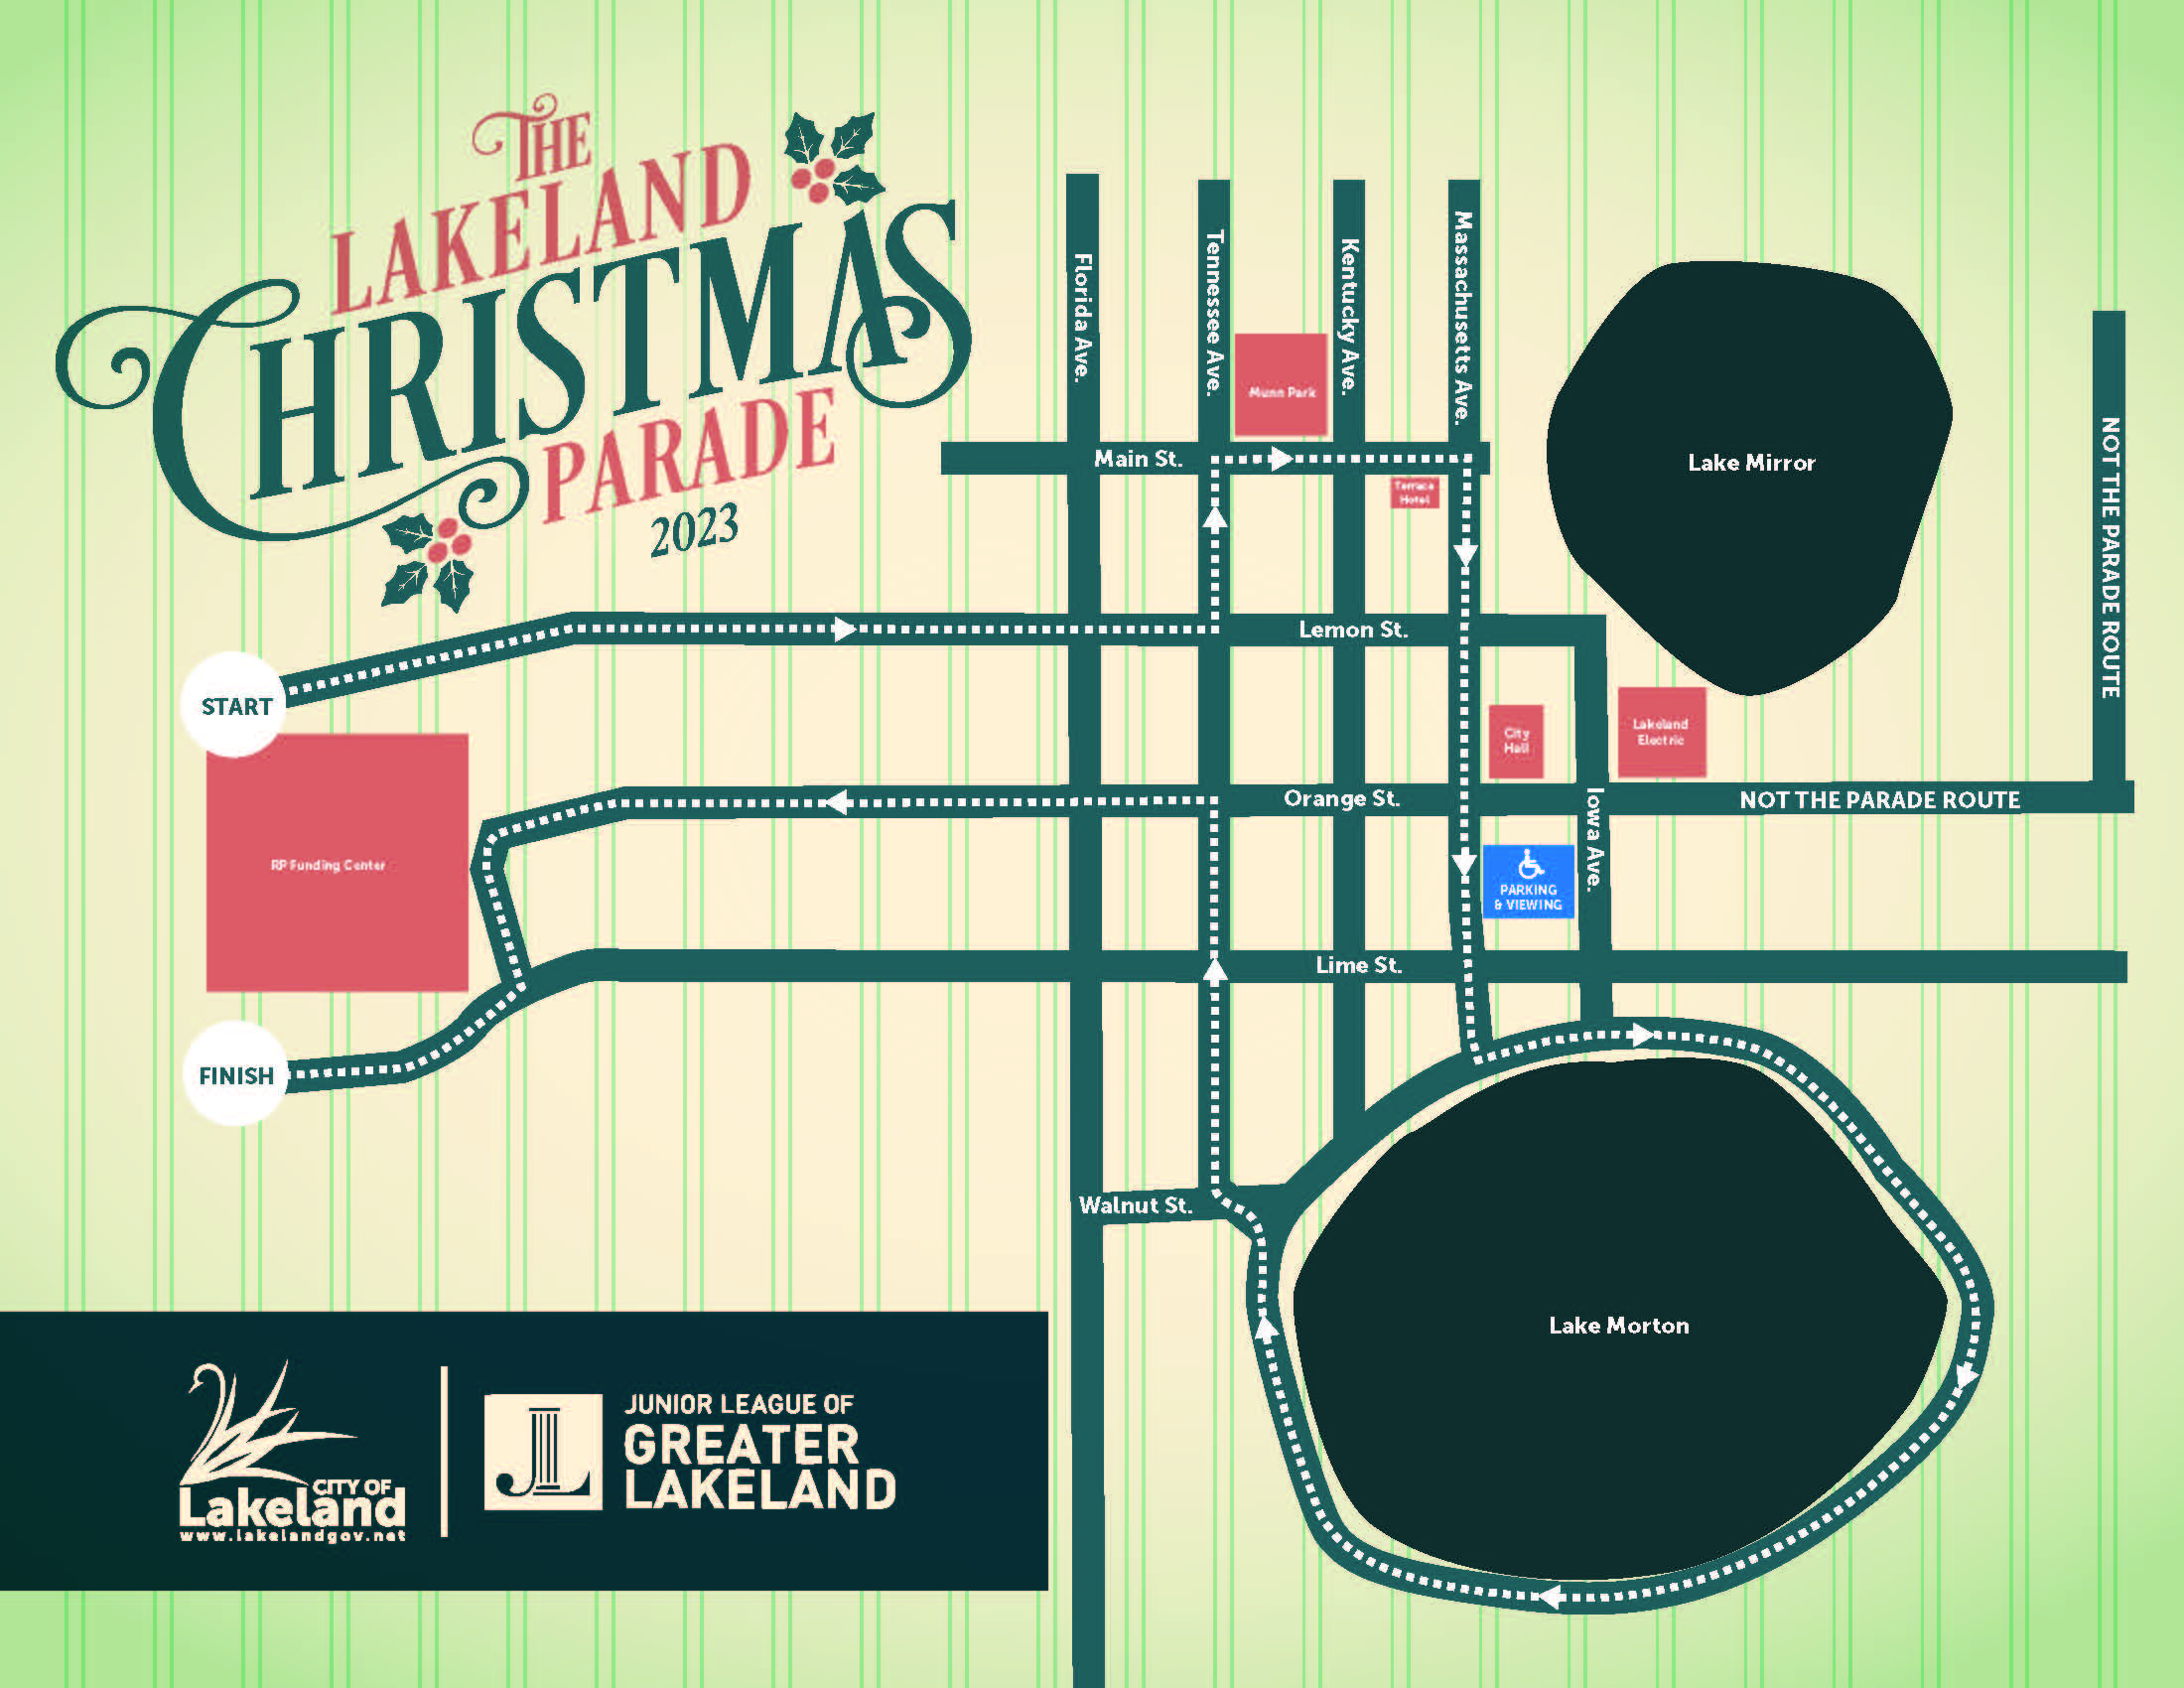 The Lakeland Christmas Parade City of Lakeland